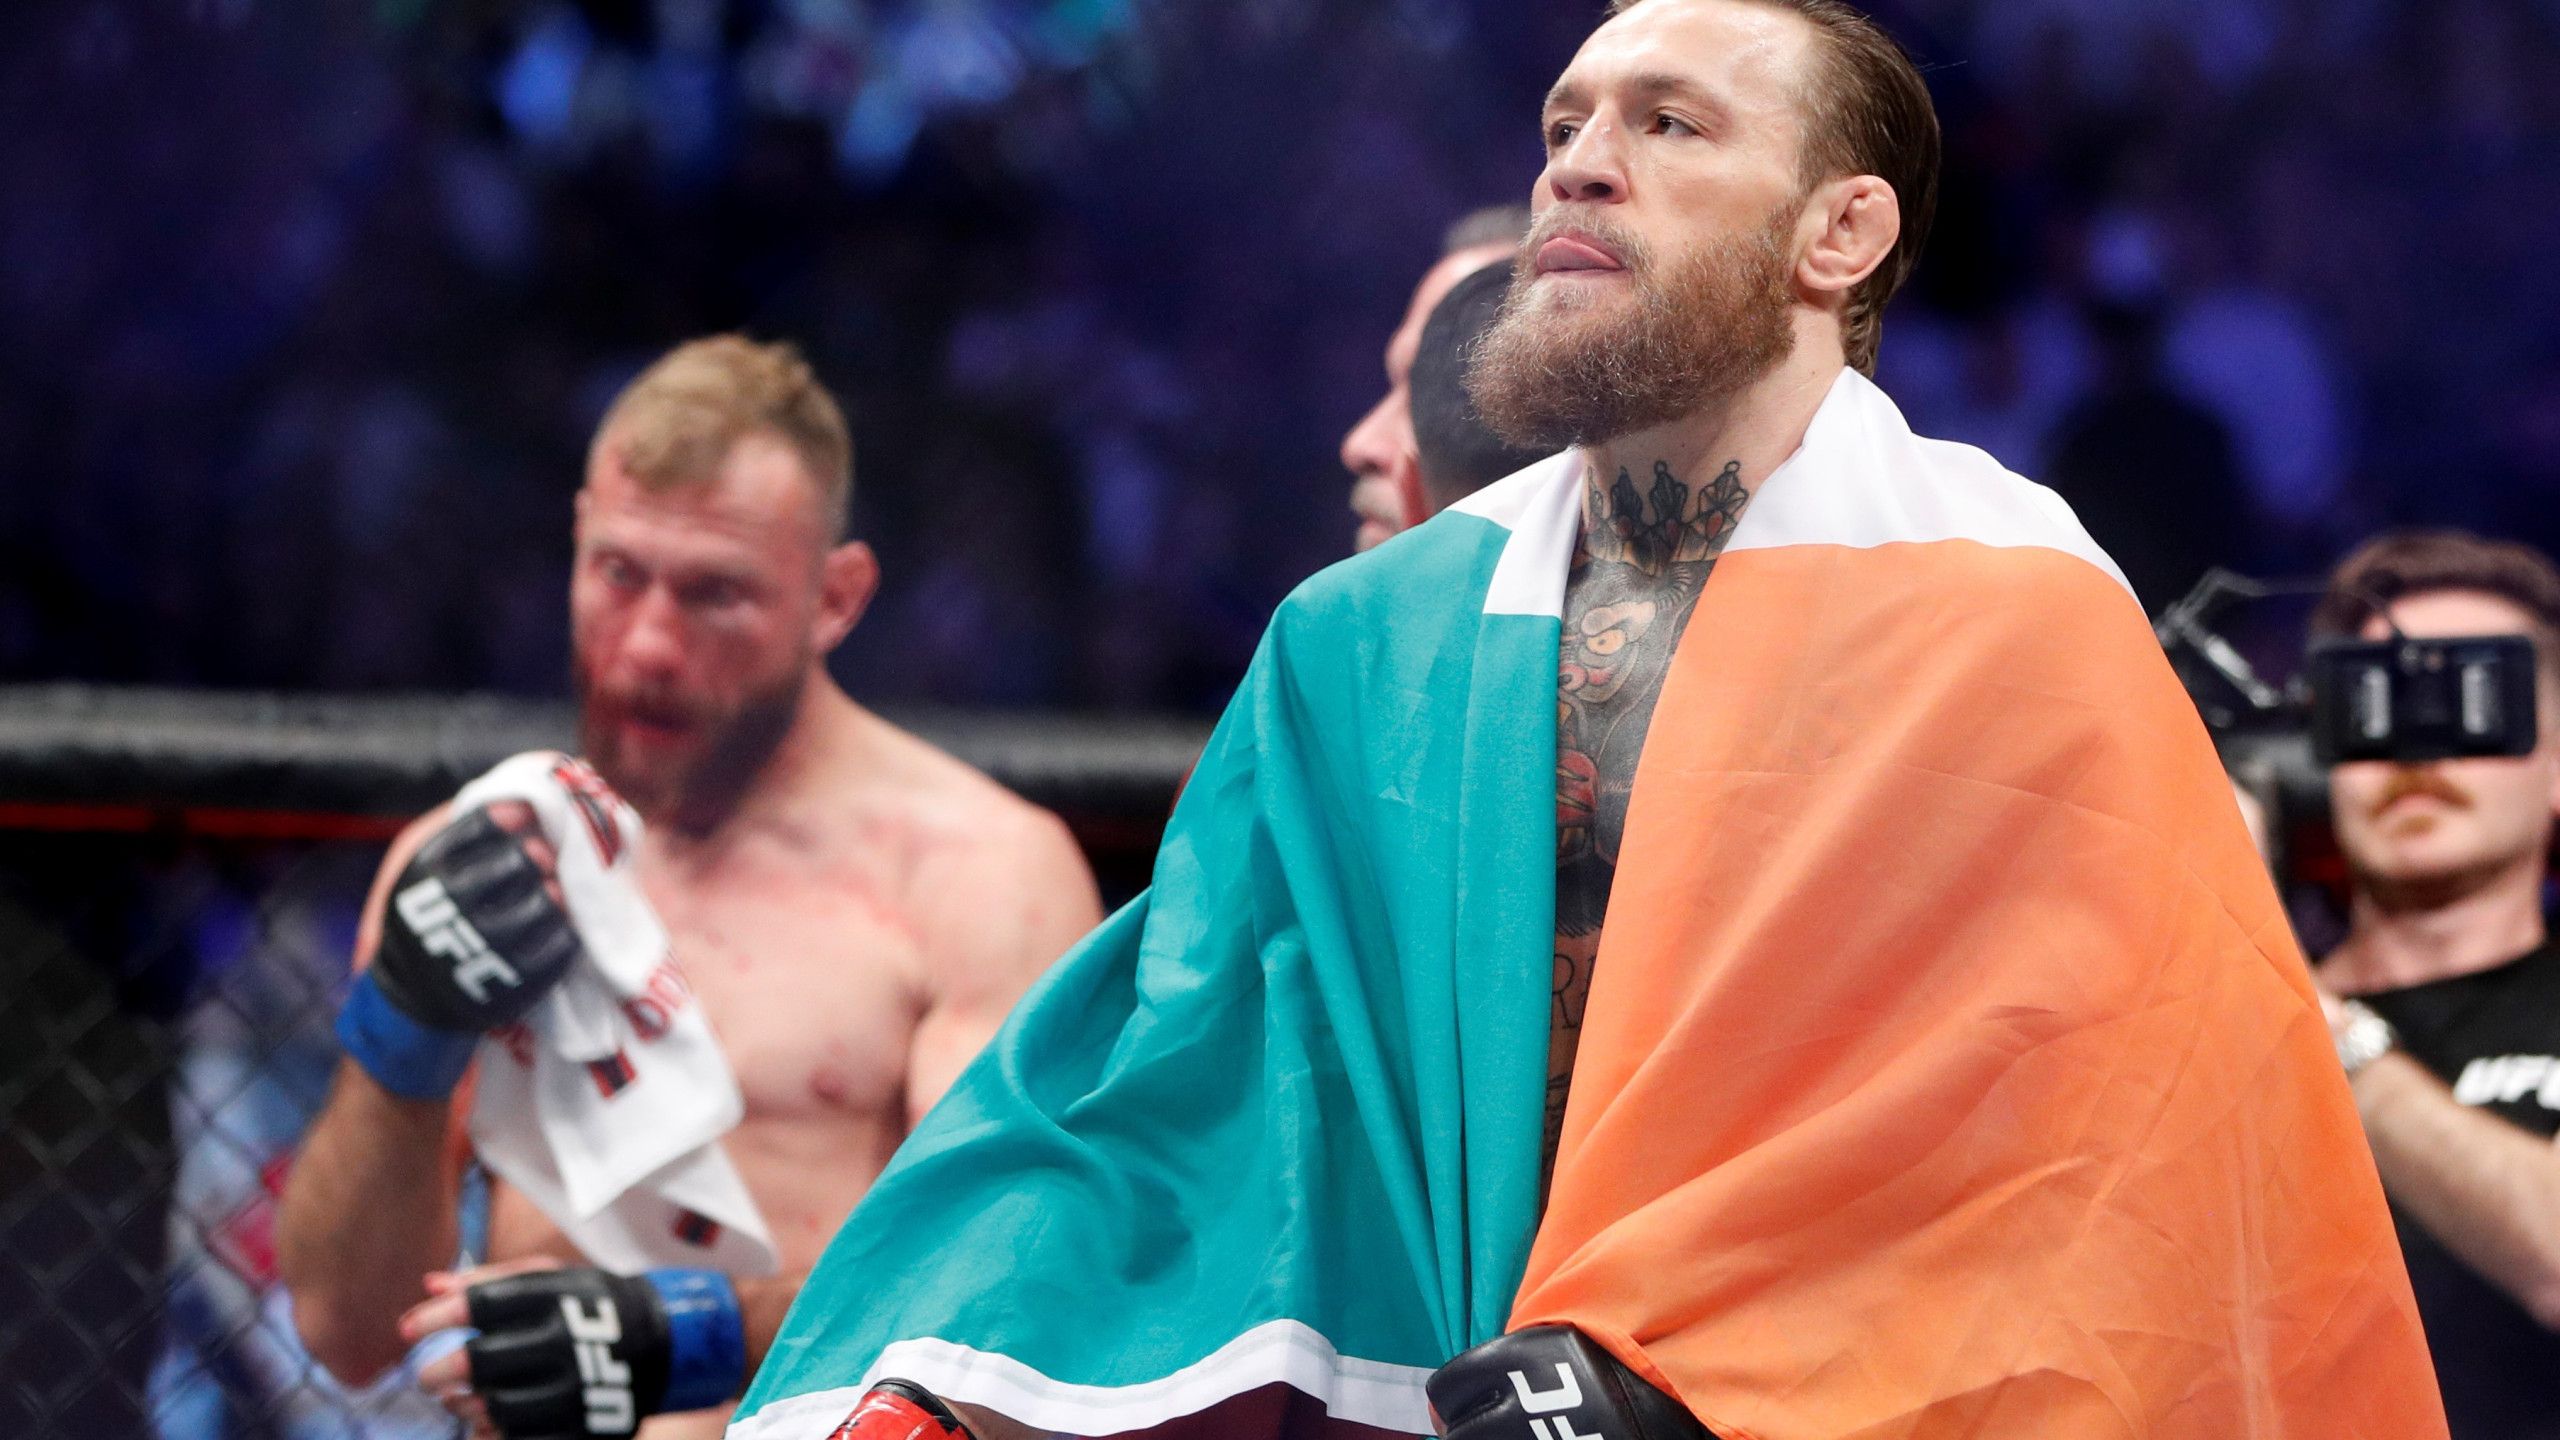 Conor McGregor defeats opponent in 40 seconds in UFC return